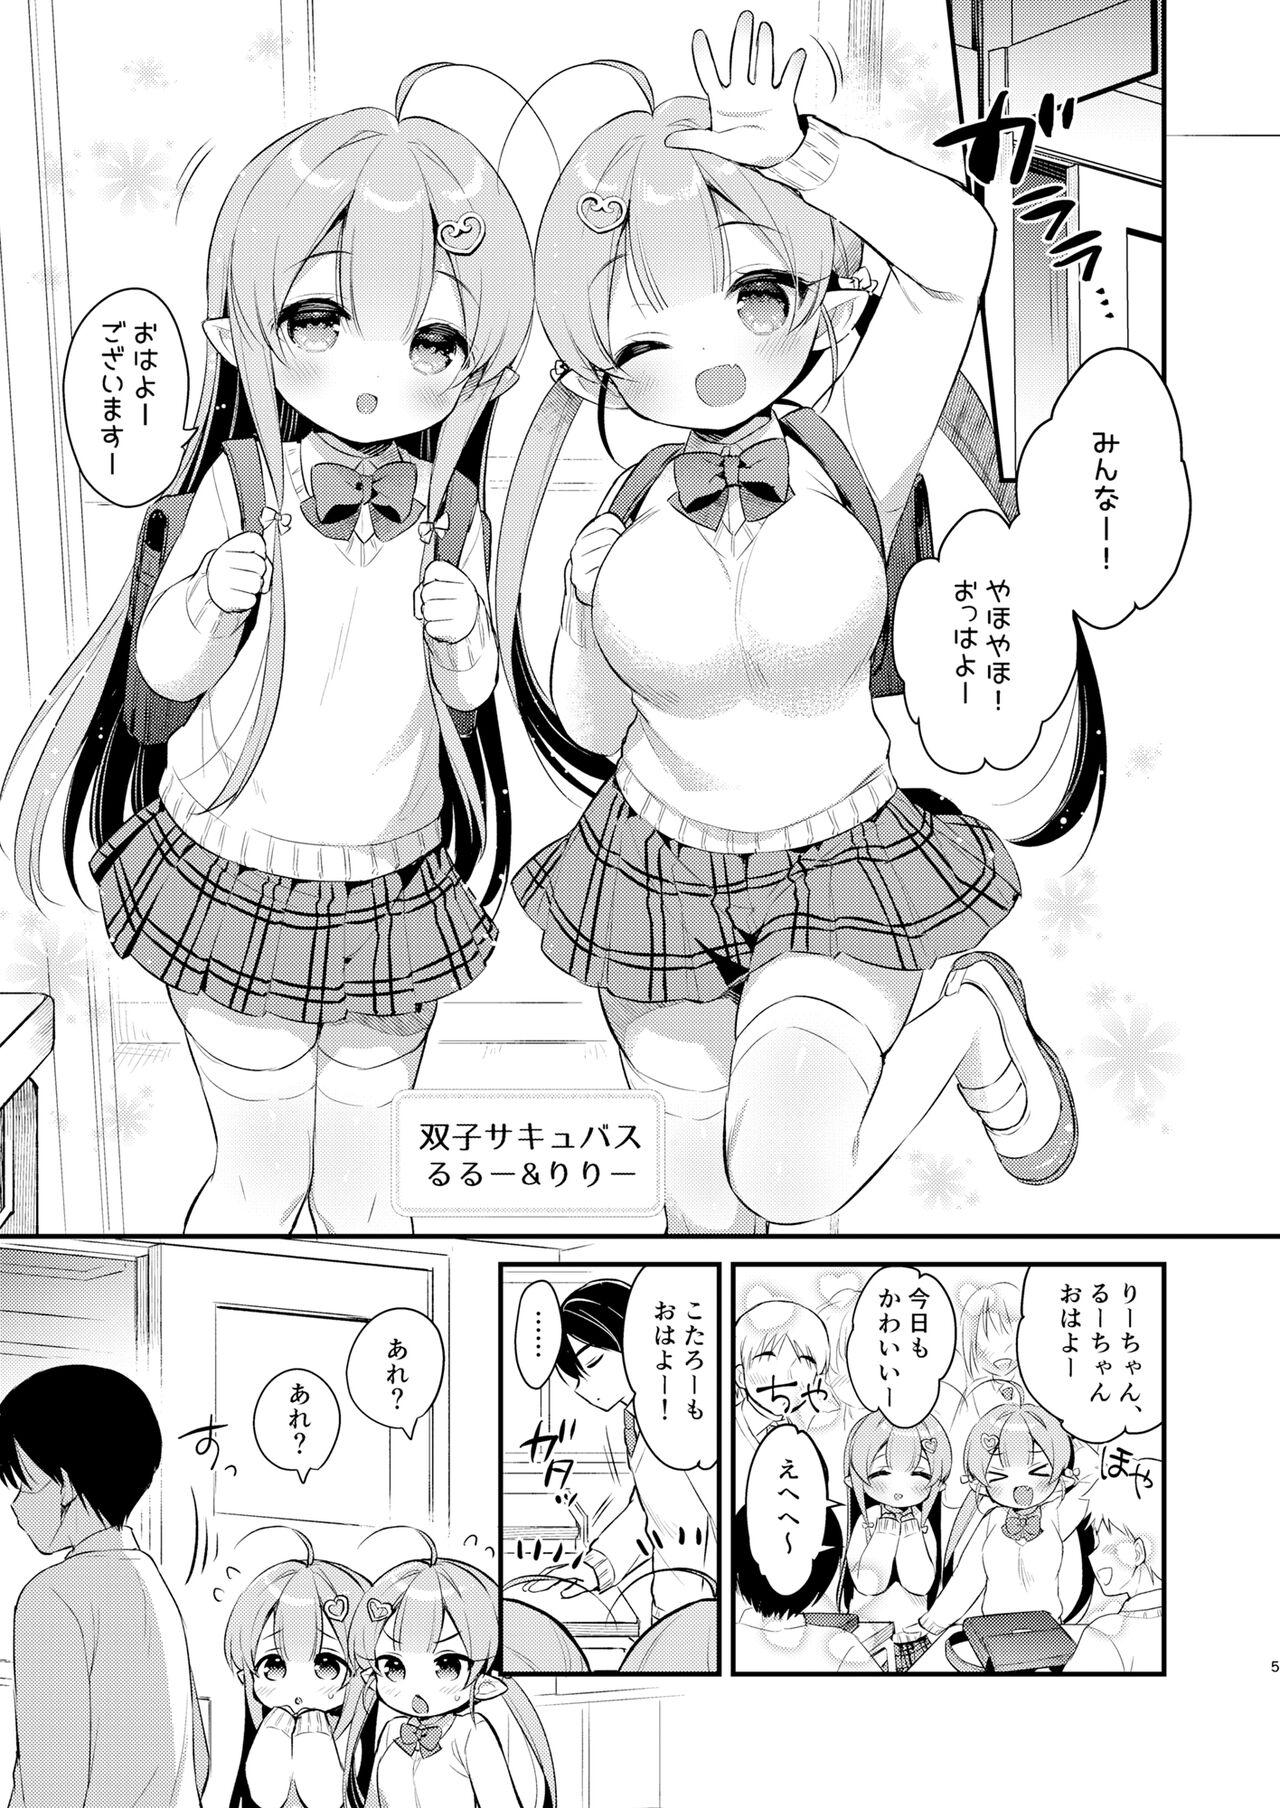 Morrita Totsugeki Futago Succubus-chan 3 - Original Gays - Page 4